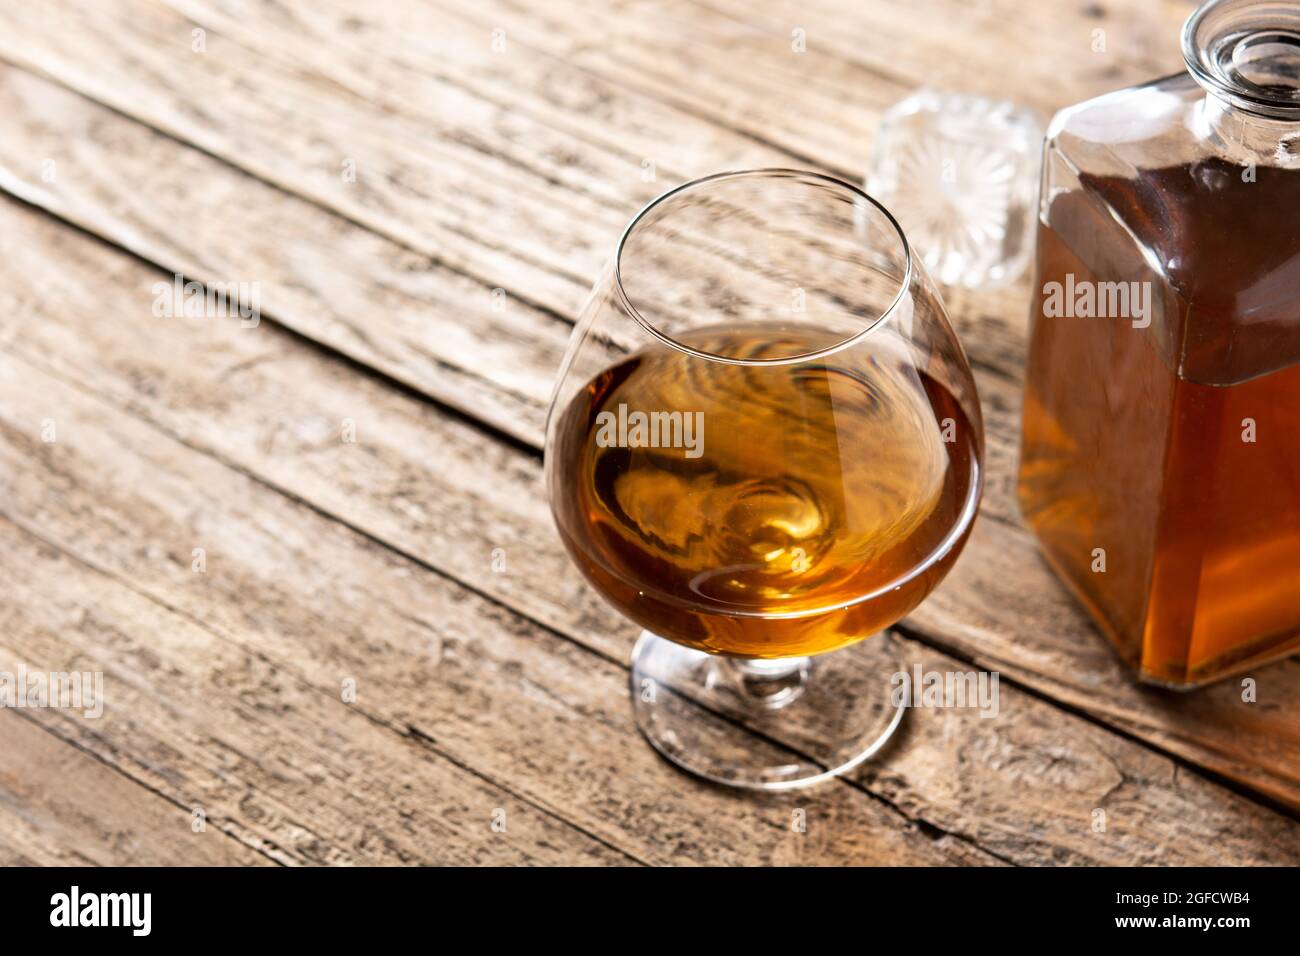 Boisson au Cognac ou au whisky sur table rustique en bois et fond noir. Banque D'Images